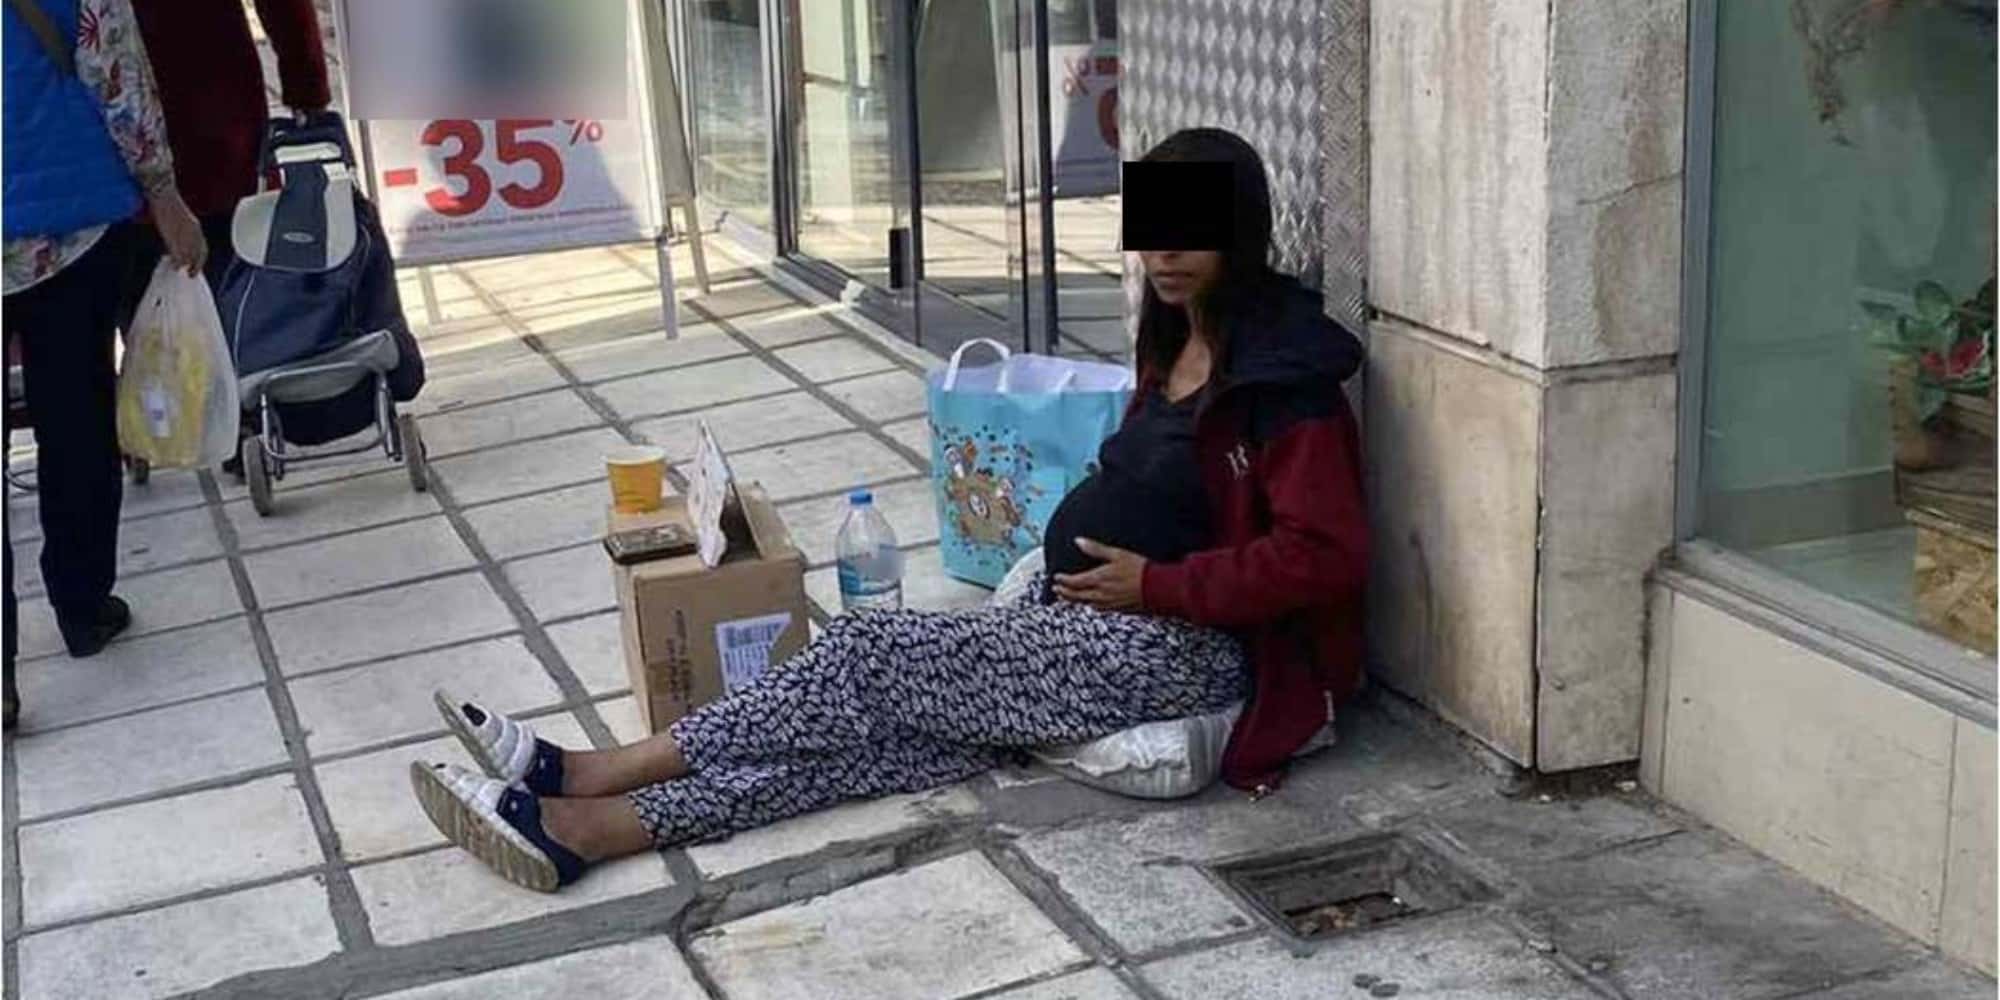 Η 34χρονη που έζησε την περιπέτεια στη Θεσσαλονίκη